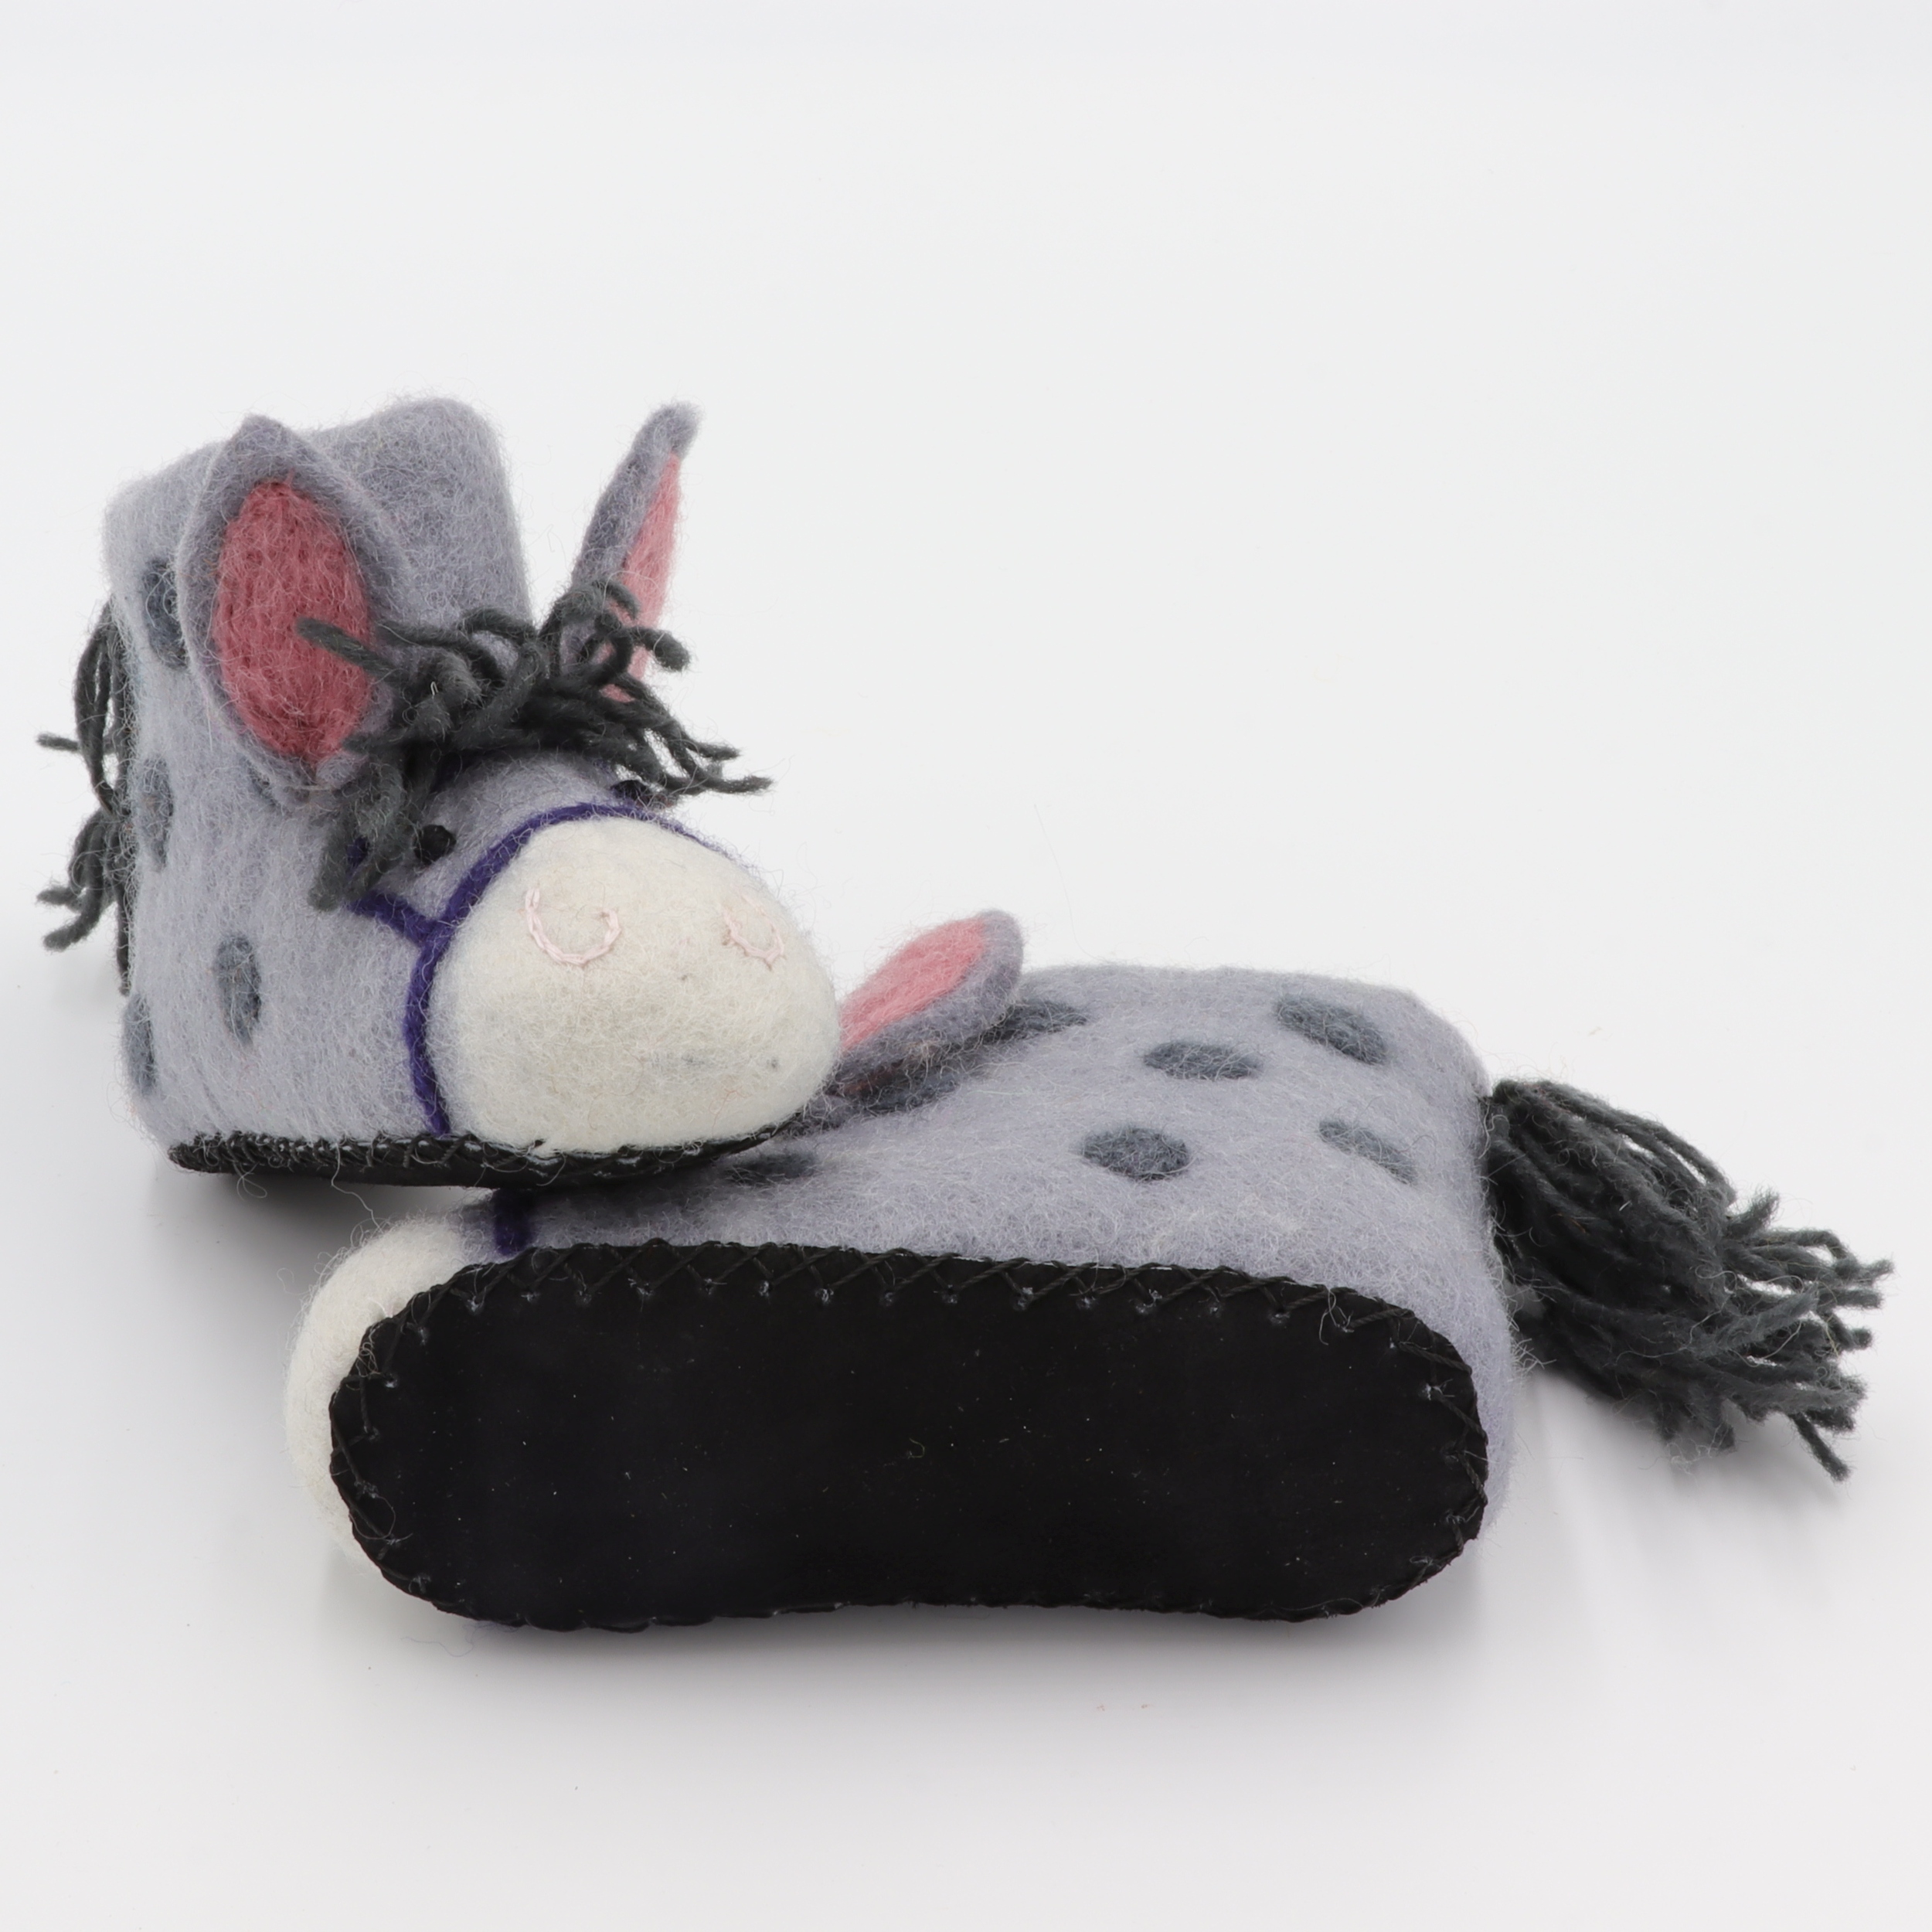 Schuhe aus Filz für Kinder - Der Graue Esel - rutschfeste Sohle aus Wildleder